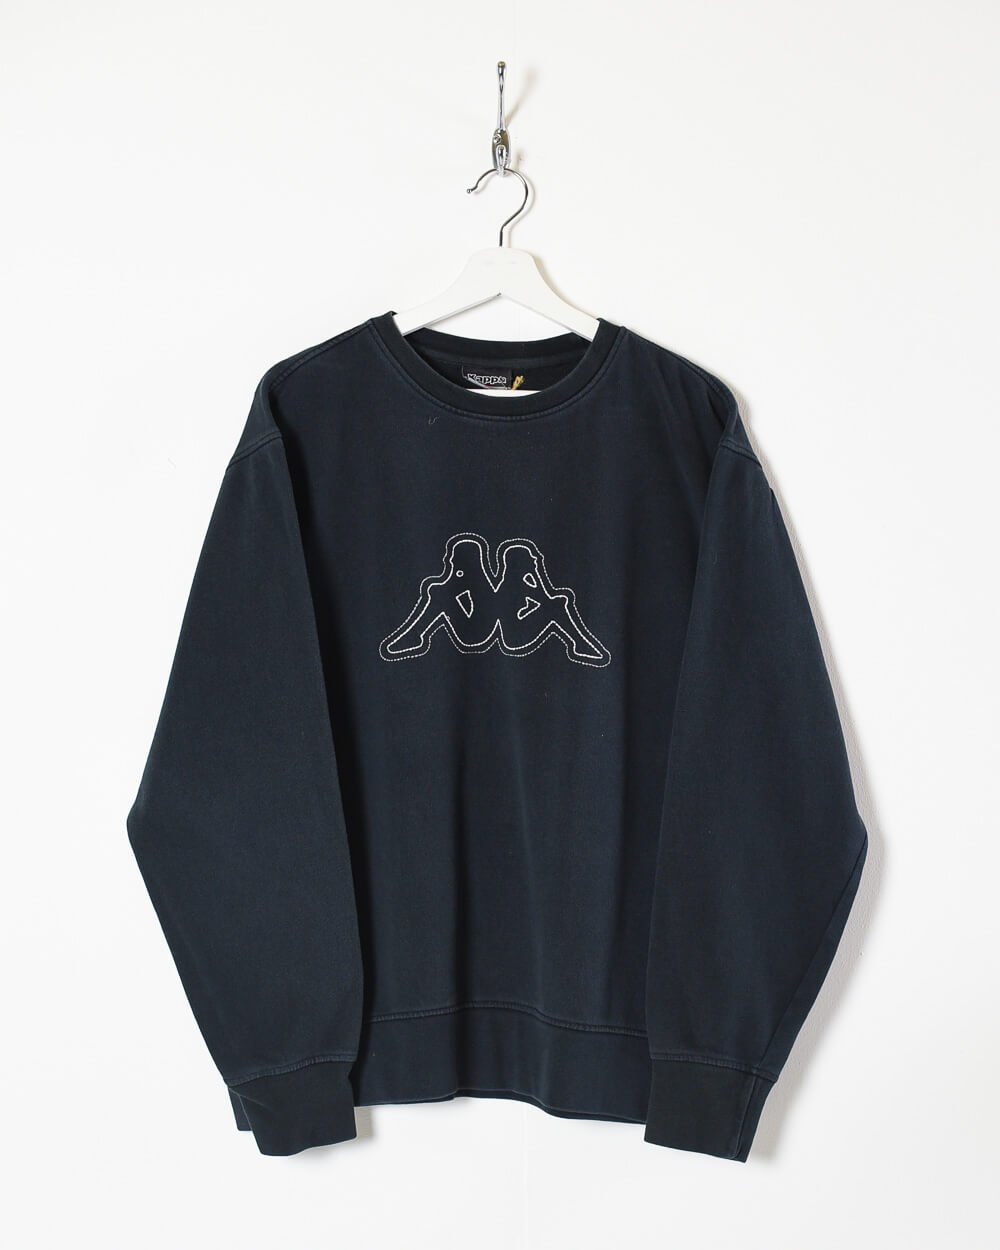 Vintage 90s Cotton Black Kappa Sweatshirt - Large– Vintage